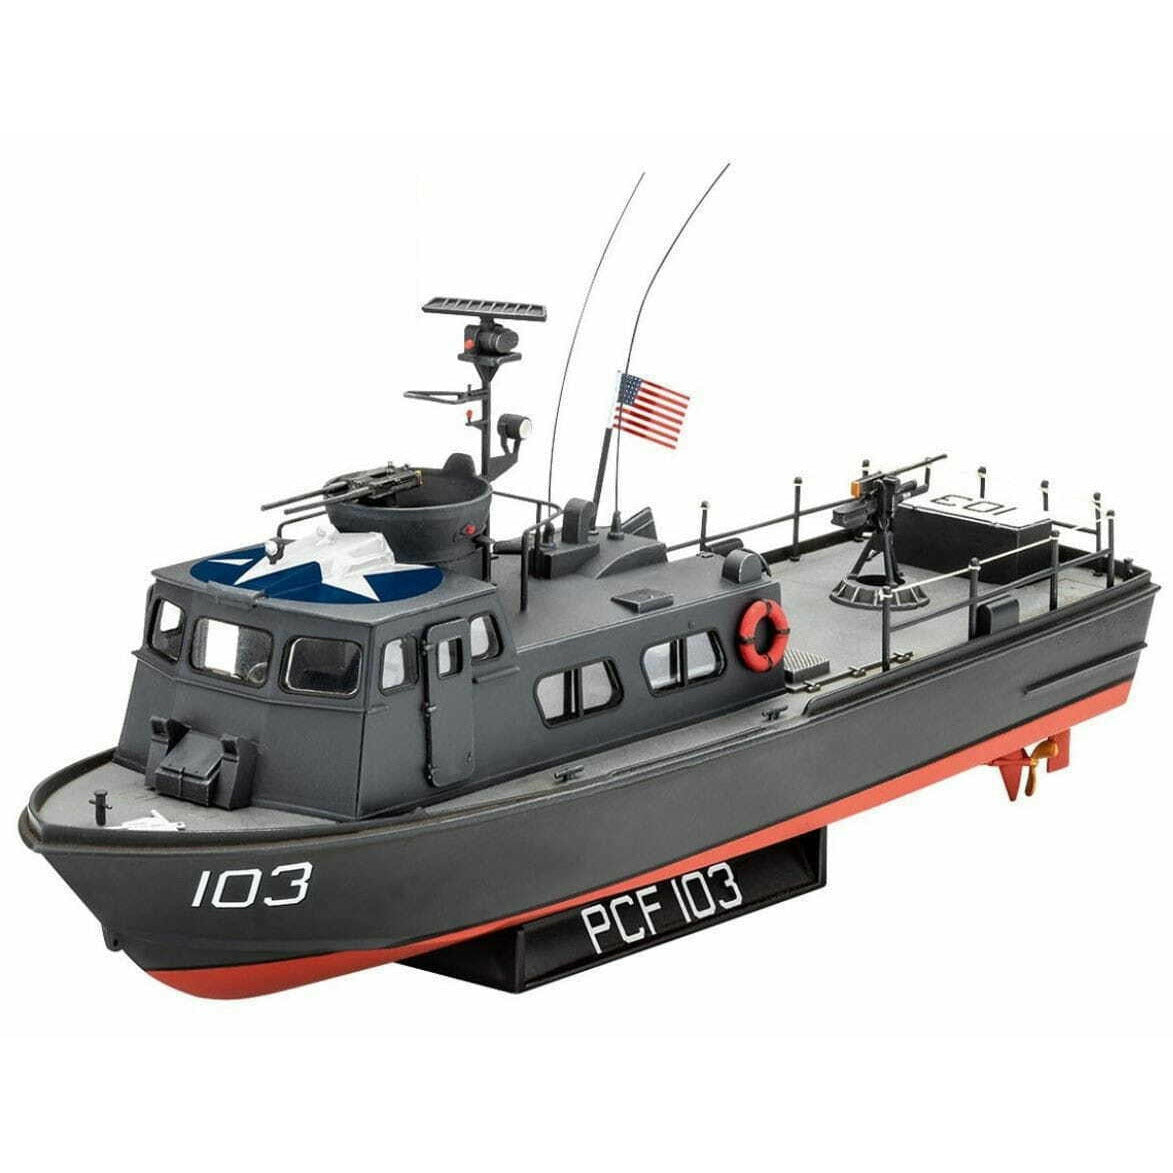 US Navy Swift Boat 1/72 Model Kit #0321 by Revell